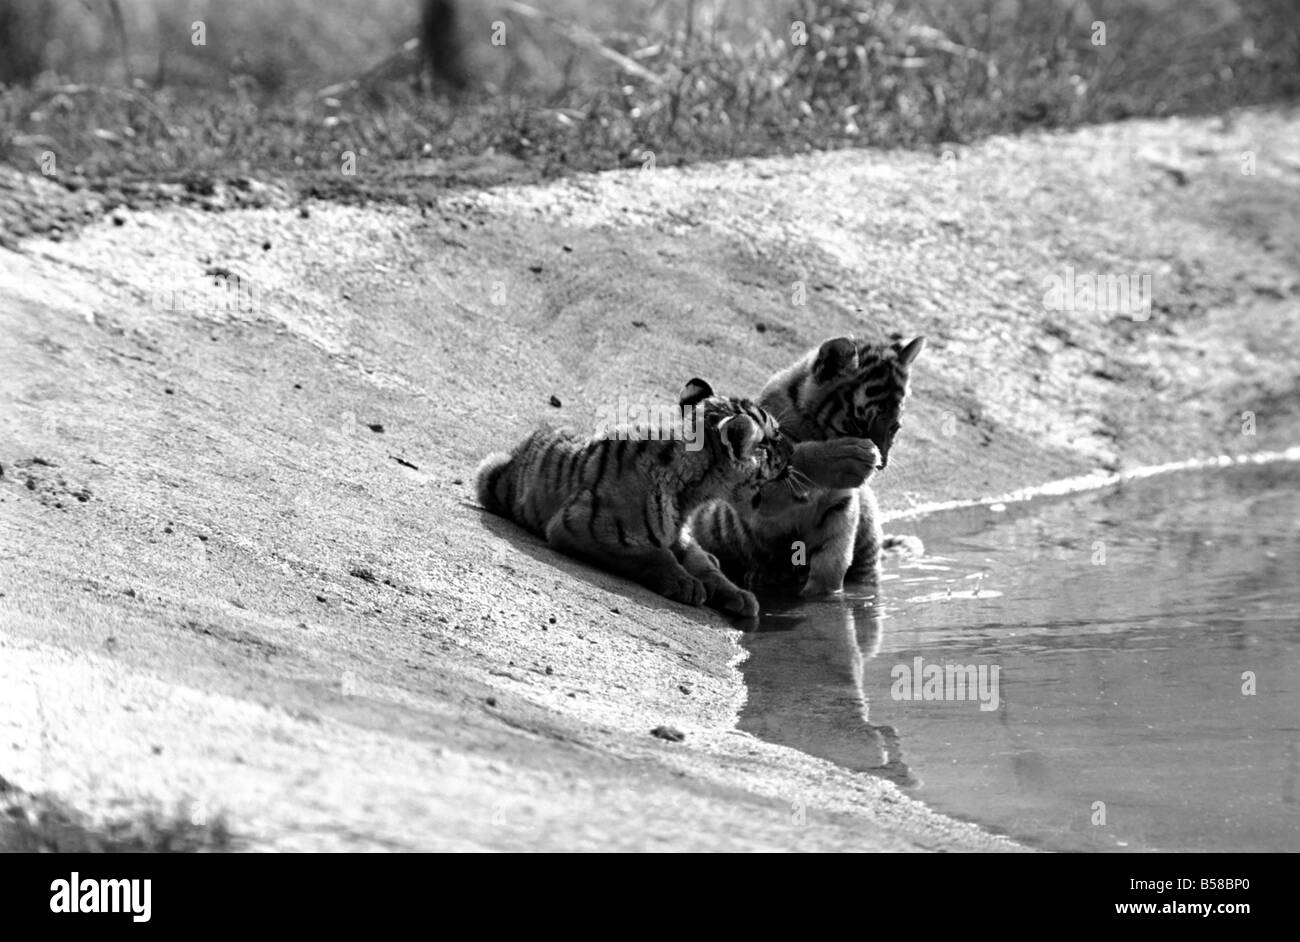 Tigerbabys in Longleat. 3 sibirischen Tigerbabys sowie liebevolle männliche und weibliche Tiger. Diese seltene und teure Tiere sind am Longleat Wild Life Park in der Sonne aalen. Wilts. August 1977 77-04331-002 Stockfoto